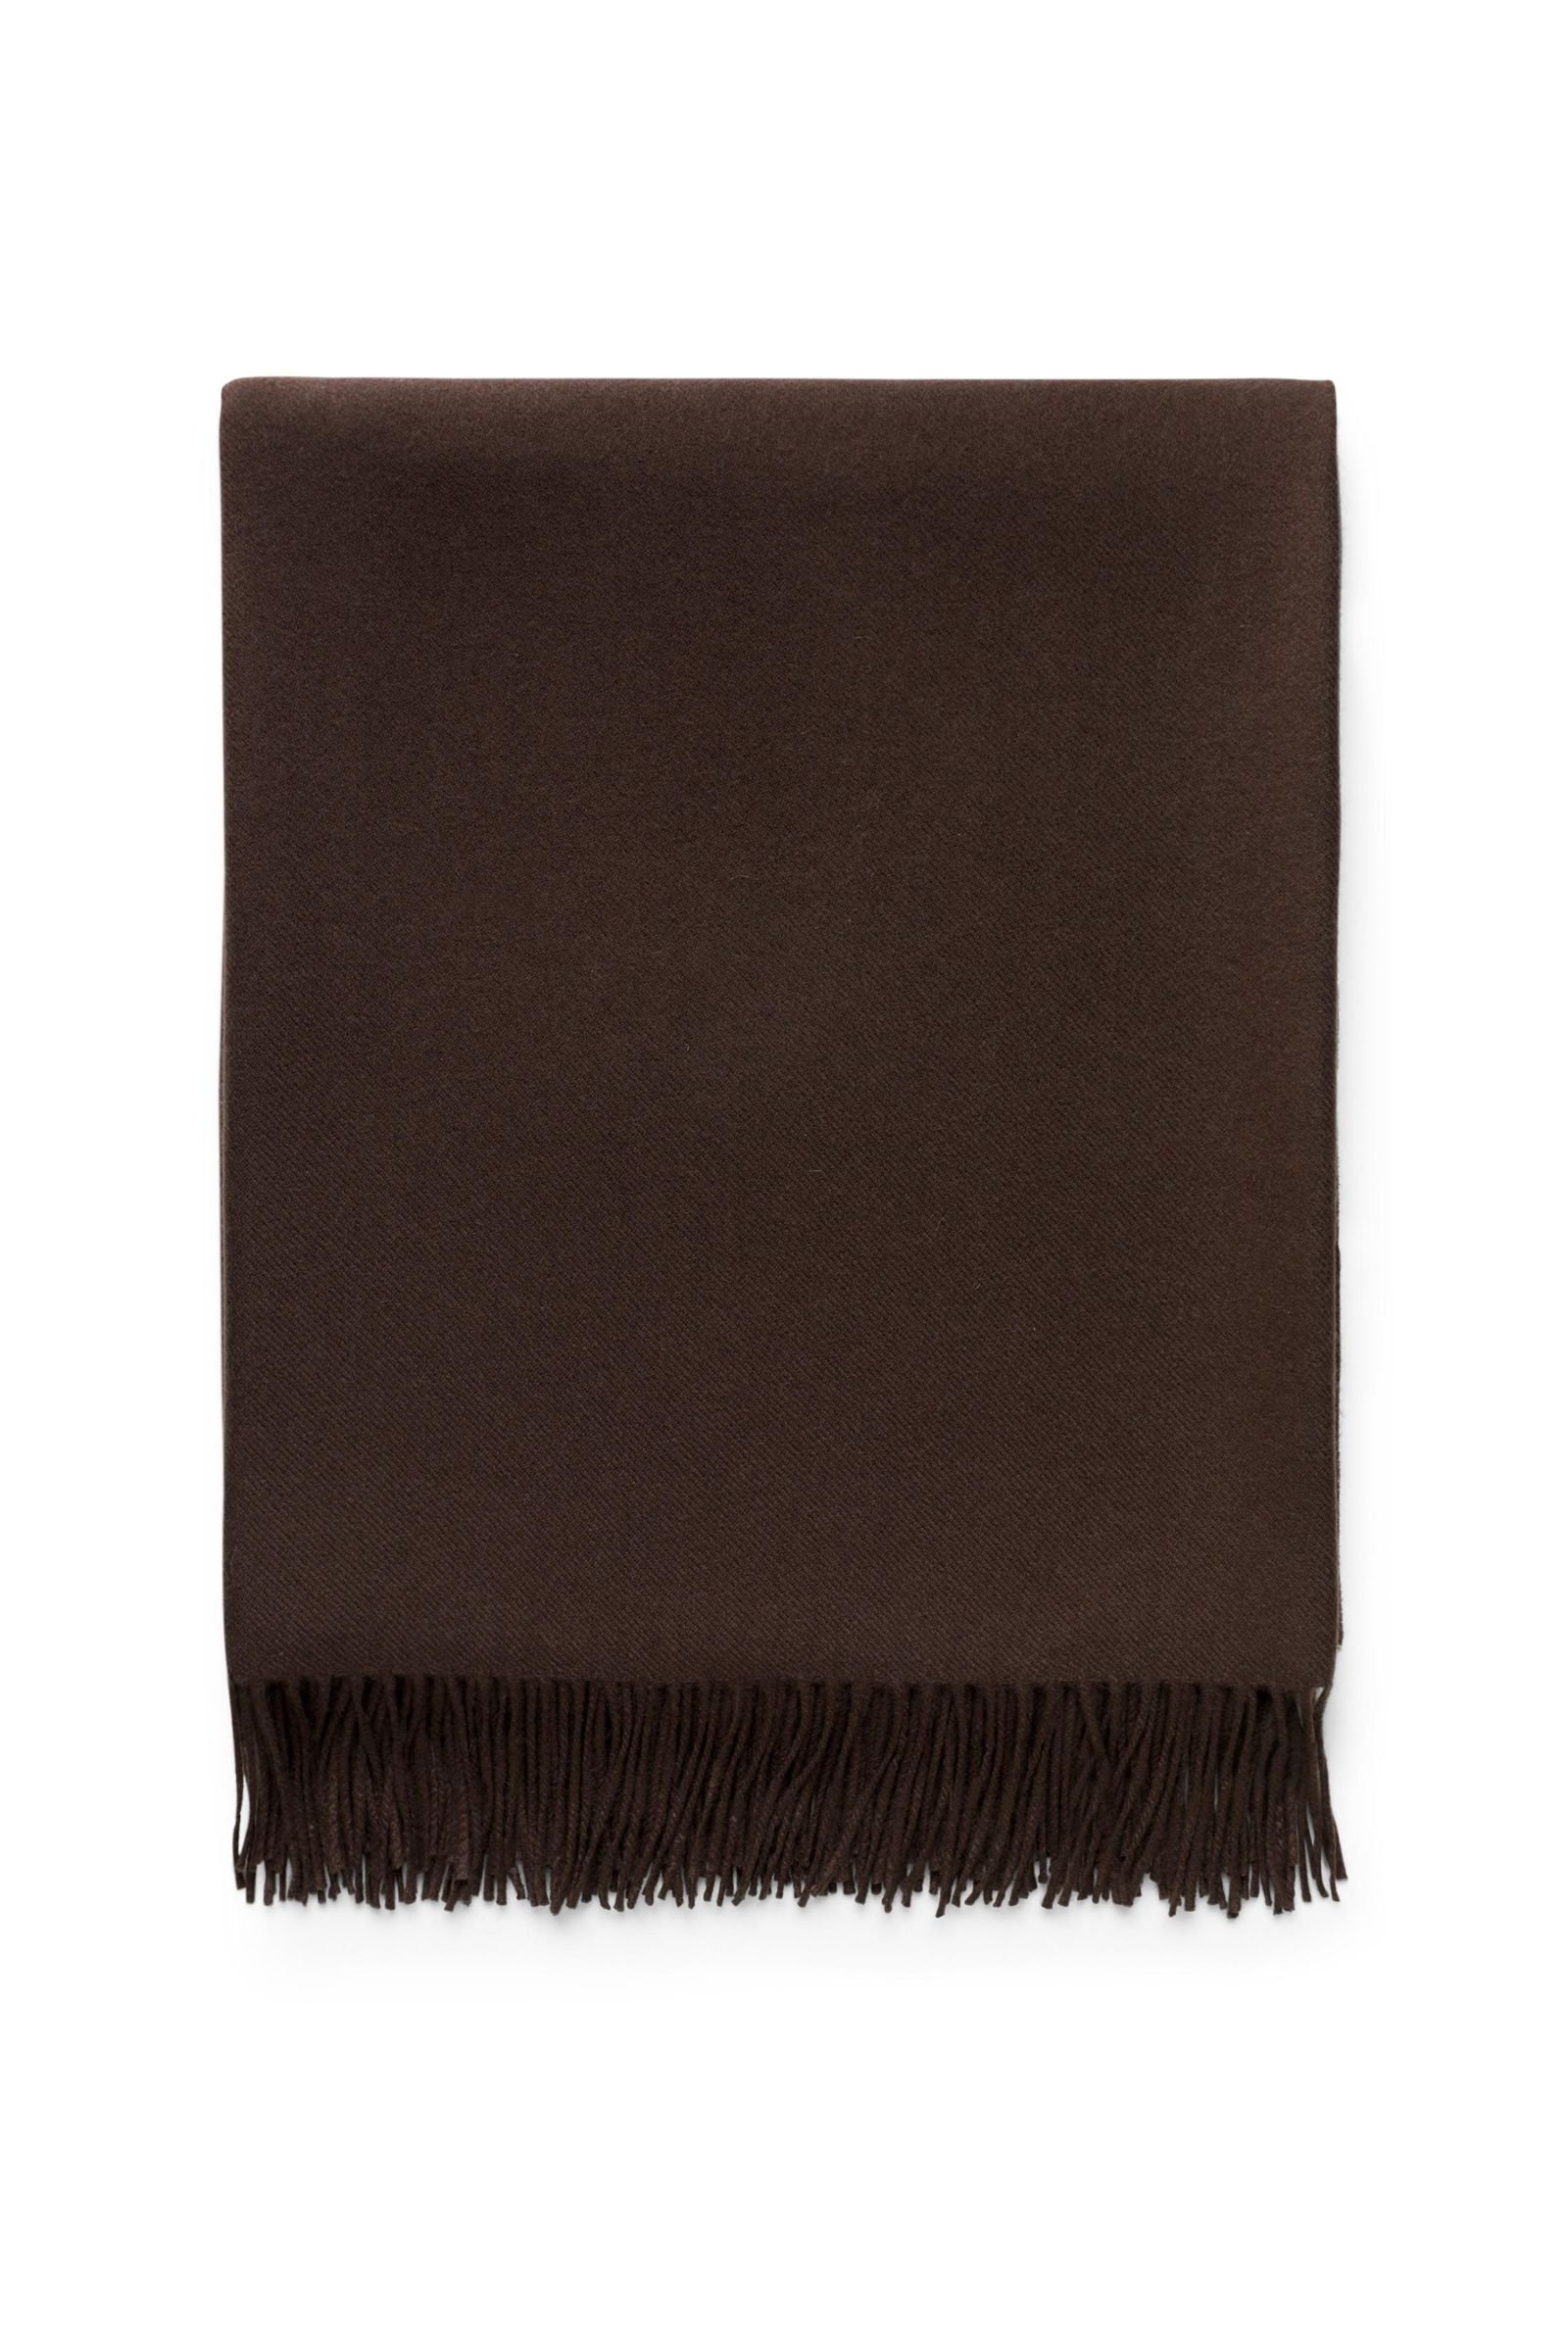 Cashmere blanket dark brown